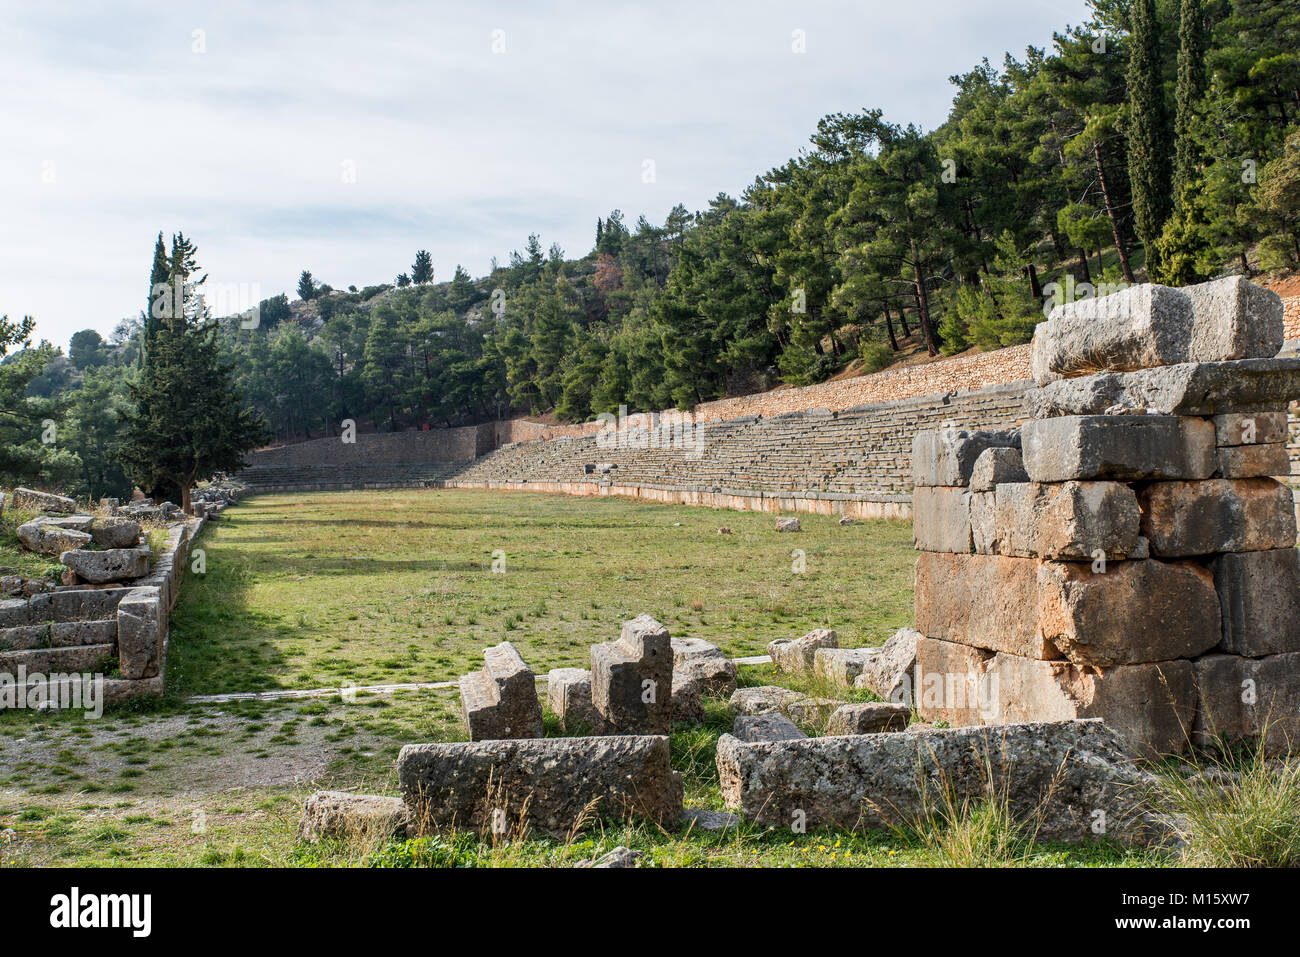 Le stade de Delphes se situe sur le point le plus haut du site archéologique de Delphes. Delphes était un important sanctuaire religieux sacré de la Grèce antique Banque D'Images